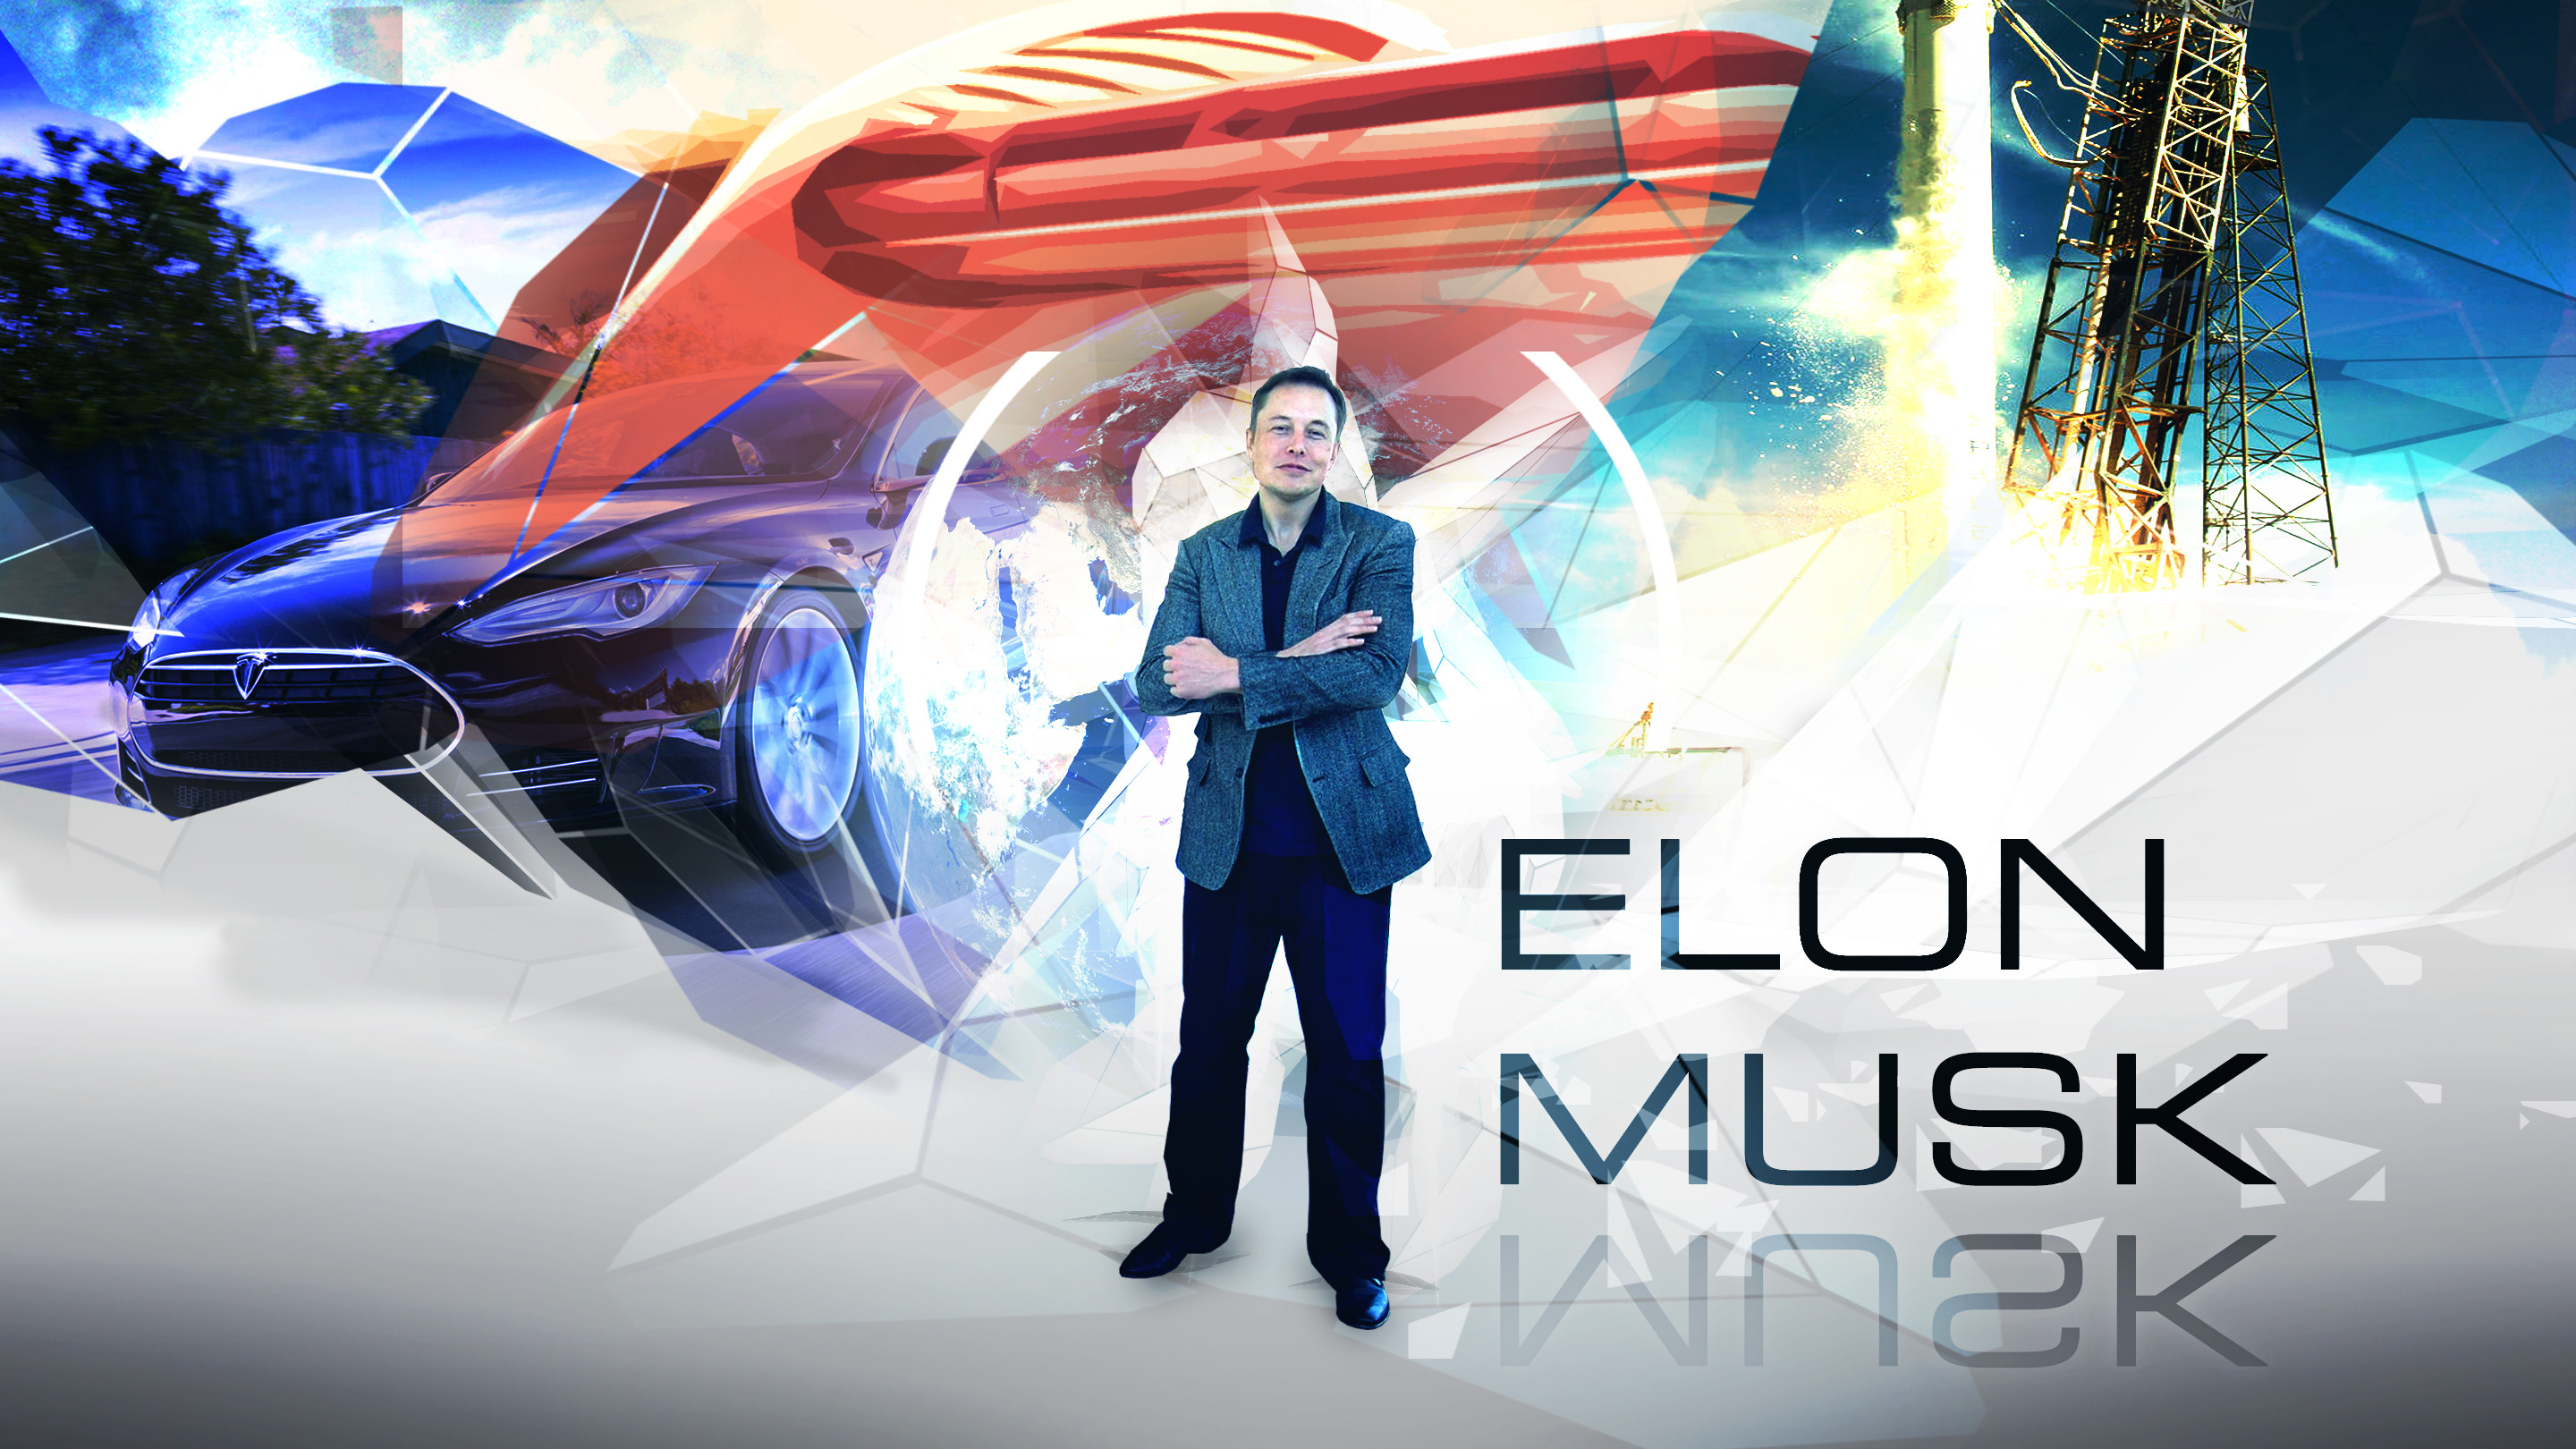 2880x1620 ... Elon Musk wallpaper 16:9 by Klamek97